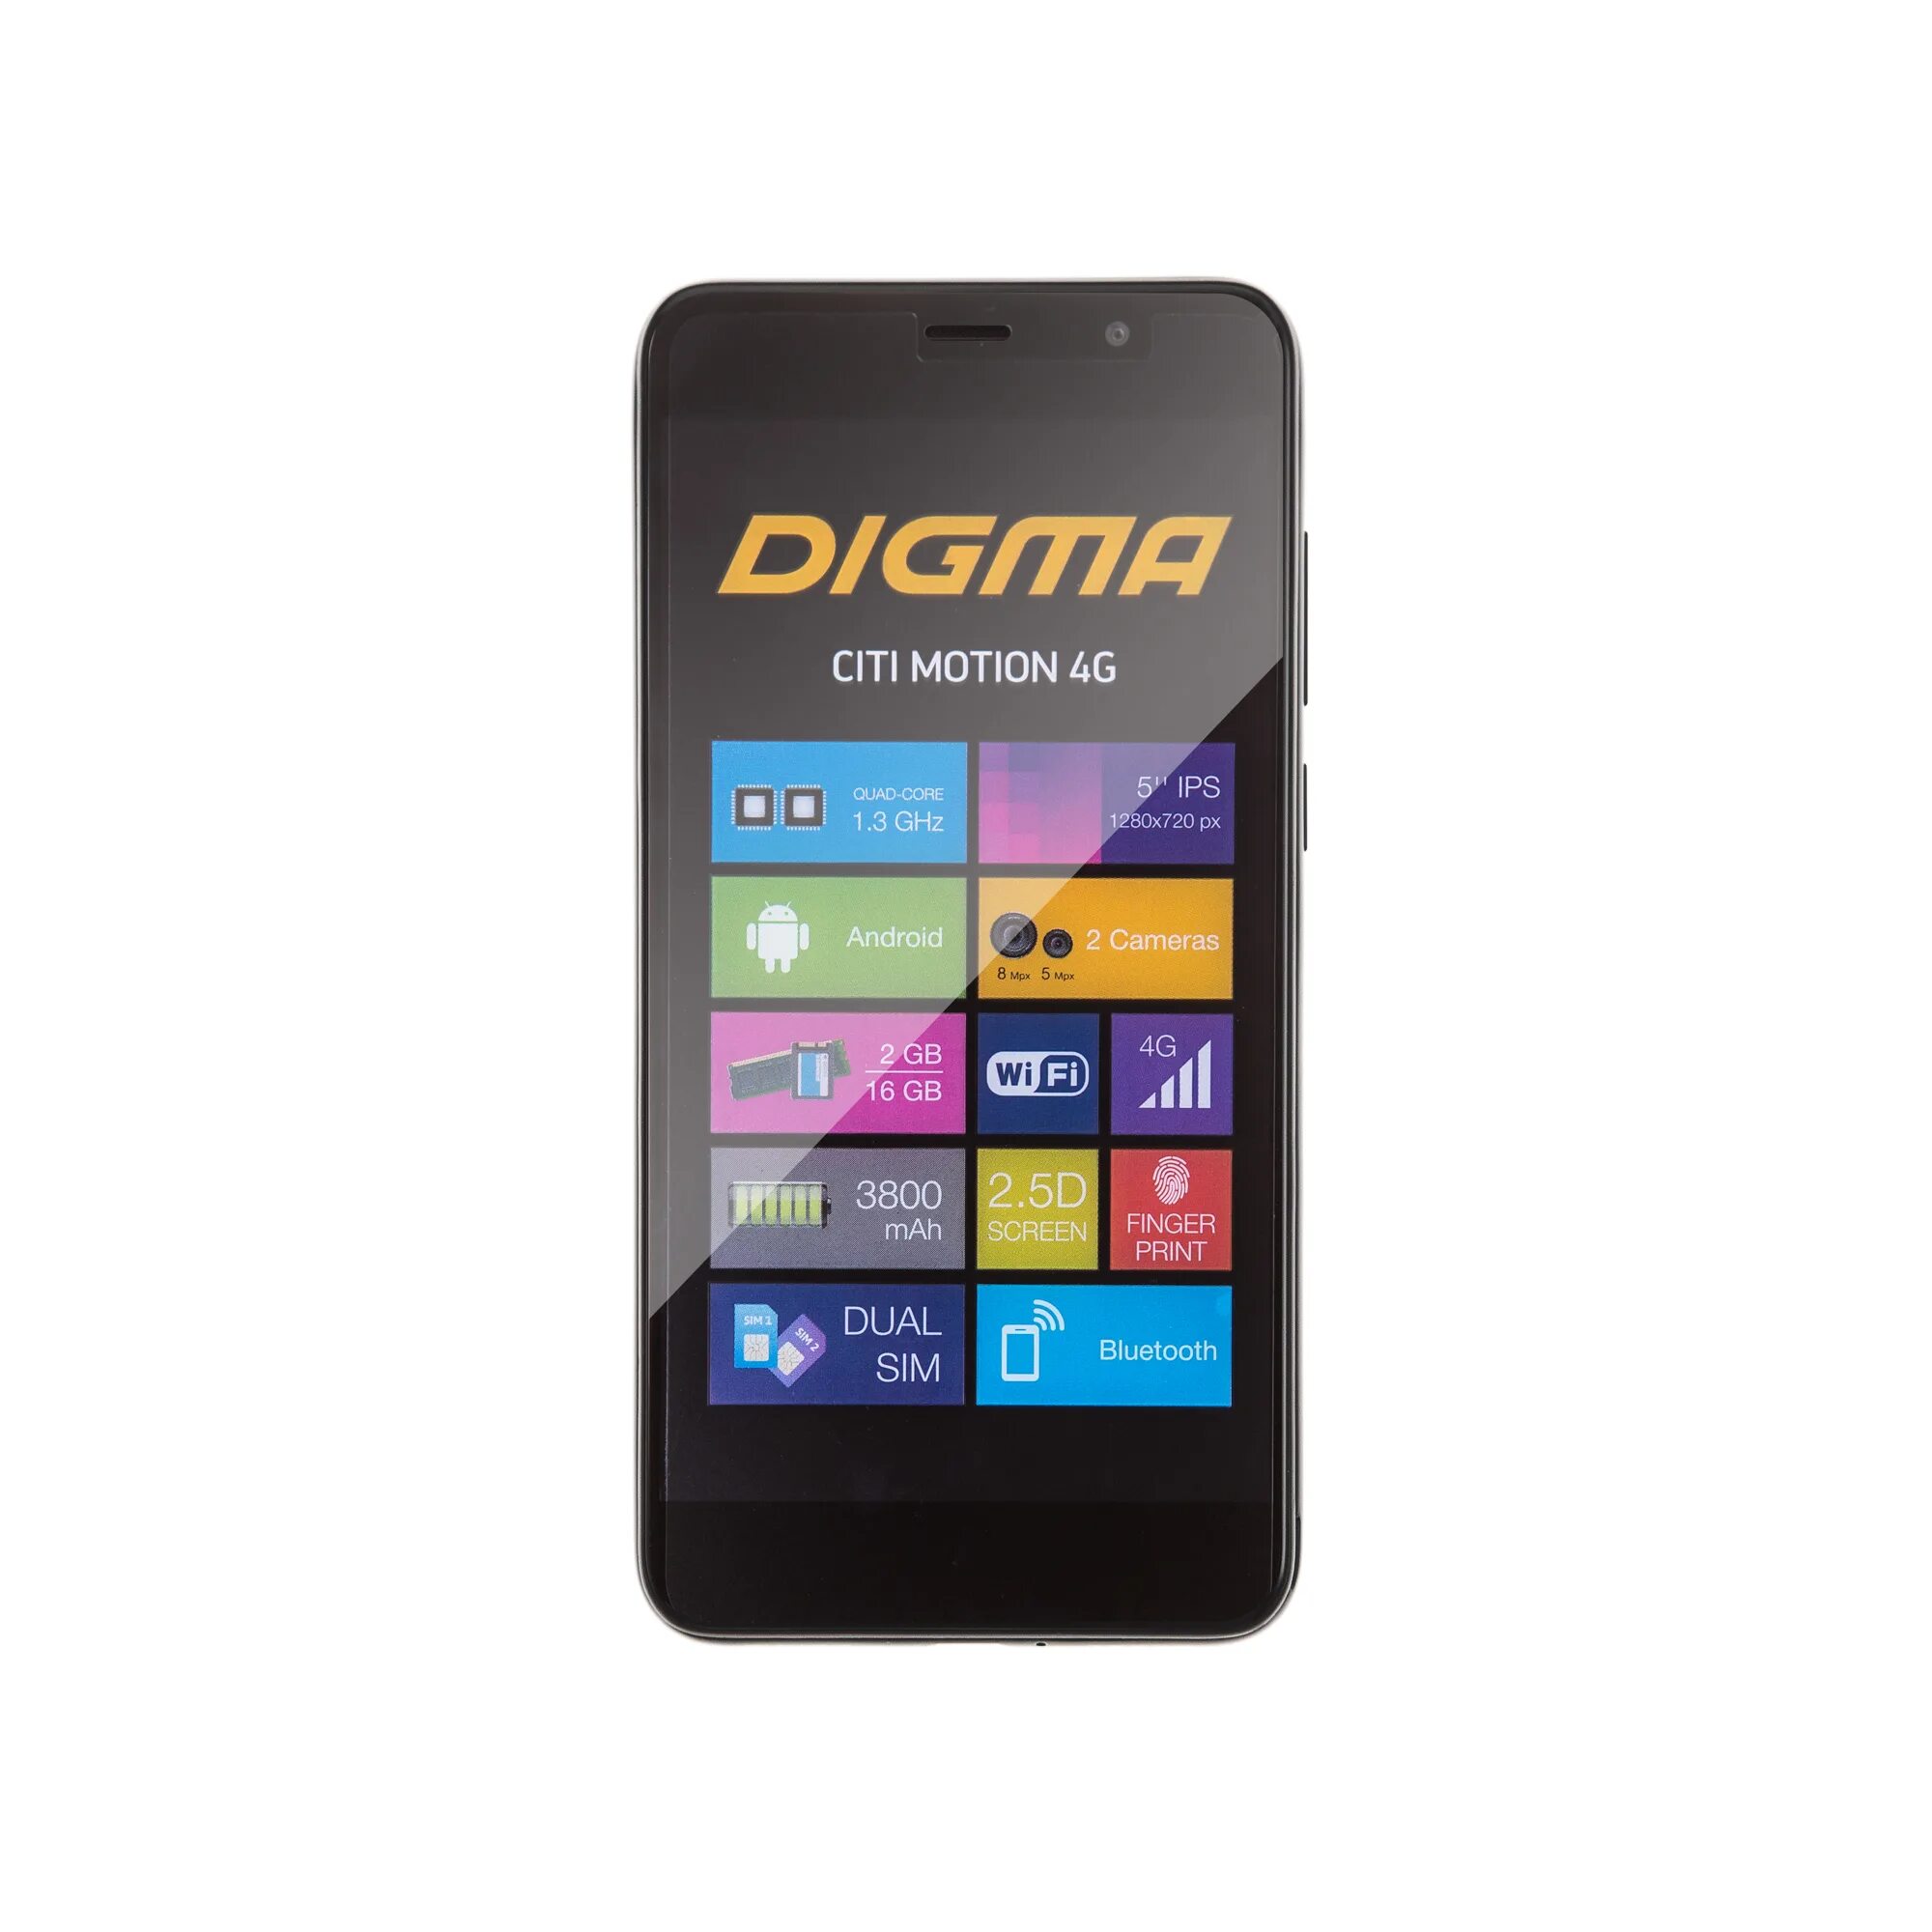 Digma citi 4g. Мобильный телефон Digma а200. Дигма про 1800f 4g. Планшет Digma Pro 1800f. Digma Pro 1800f разъем.